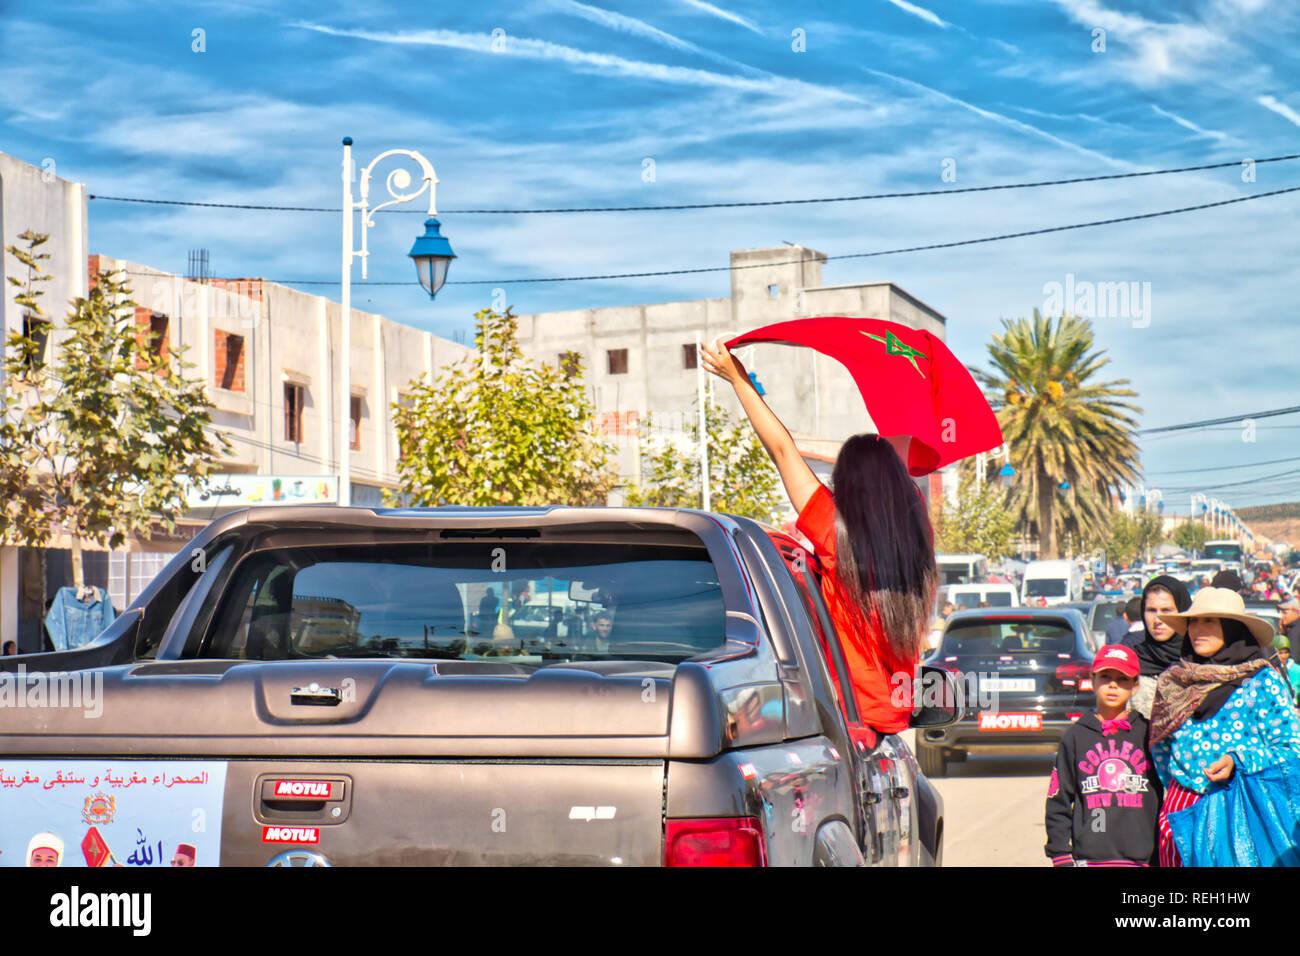 Oued Laou, Chefchaouen, Maroc - le 3 novembre 2018 : Une jeune femme brune aux cheveux longs, les vagues le drapeau marocain soulevées dans une voiture Banque D'Images